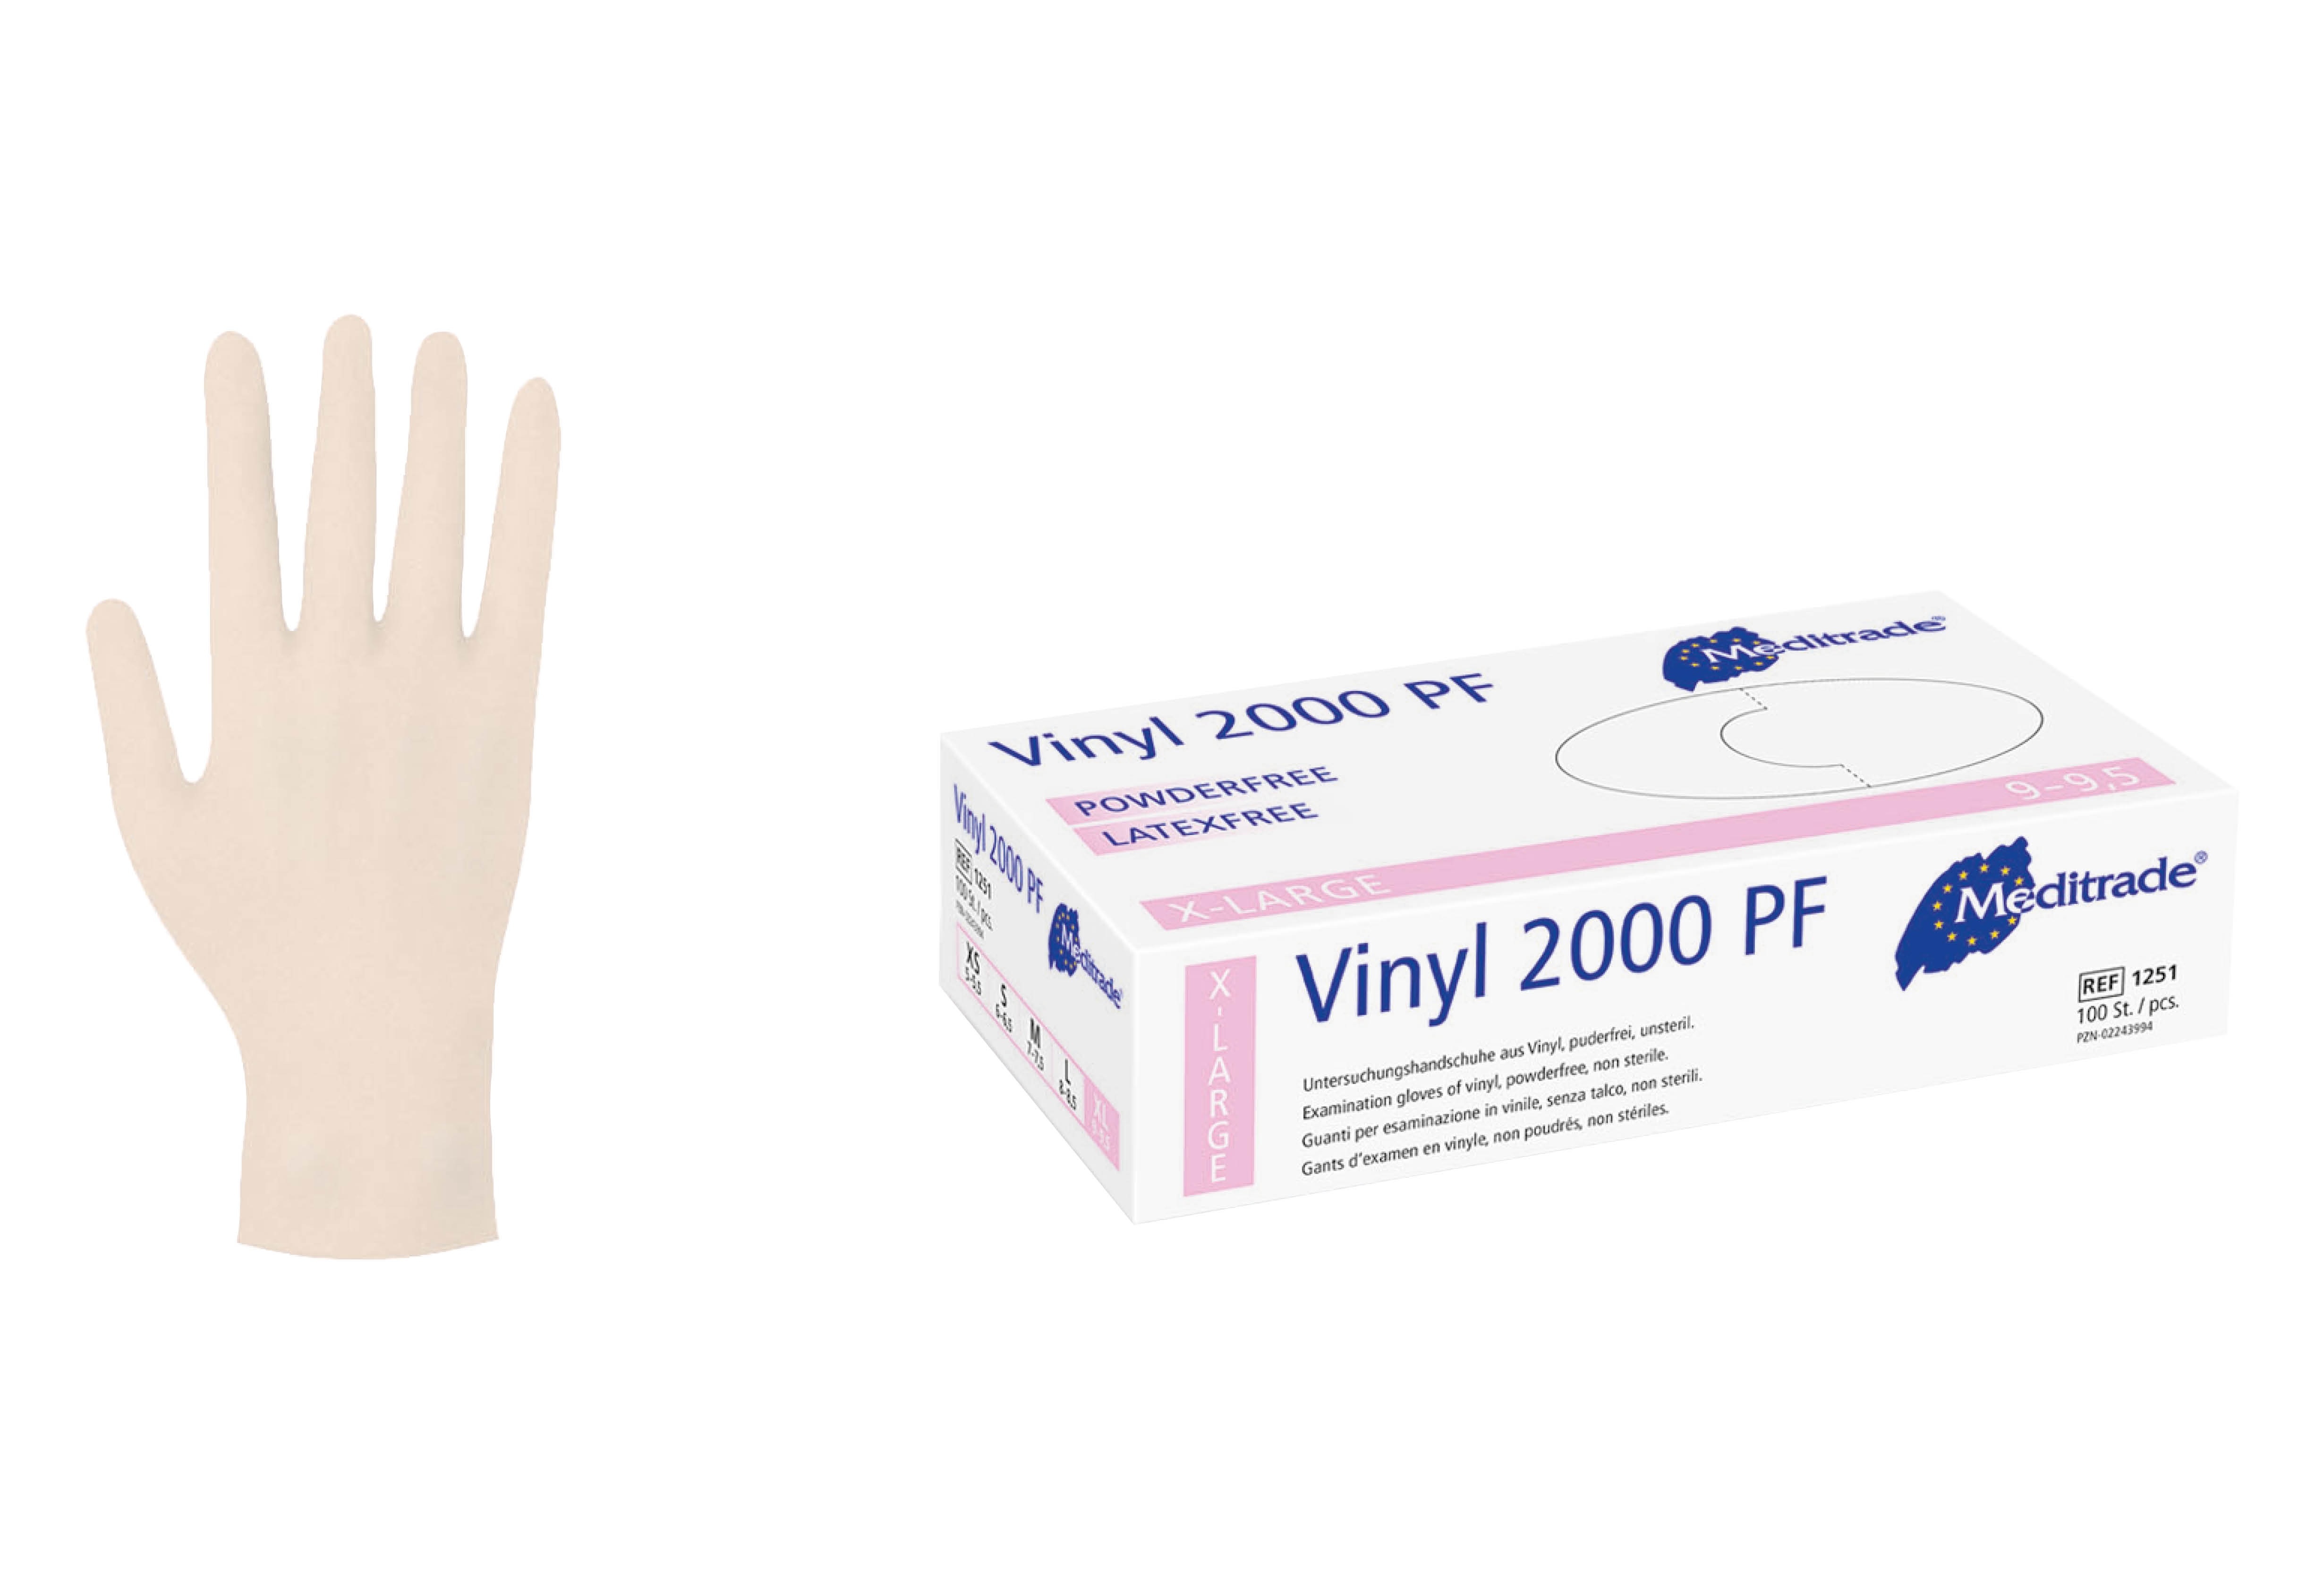 Hochwertige Vinyl Einmalhandschuhe bei med100.de mit EN 455-1 / -2 / -3/ -4 Zertifizierung. Puderfrei, und beidhändig passend. Geeignet für die Ärzte und den Kontakt mit nicht fettigen Lebensmitteln.